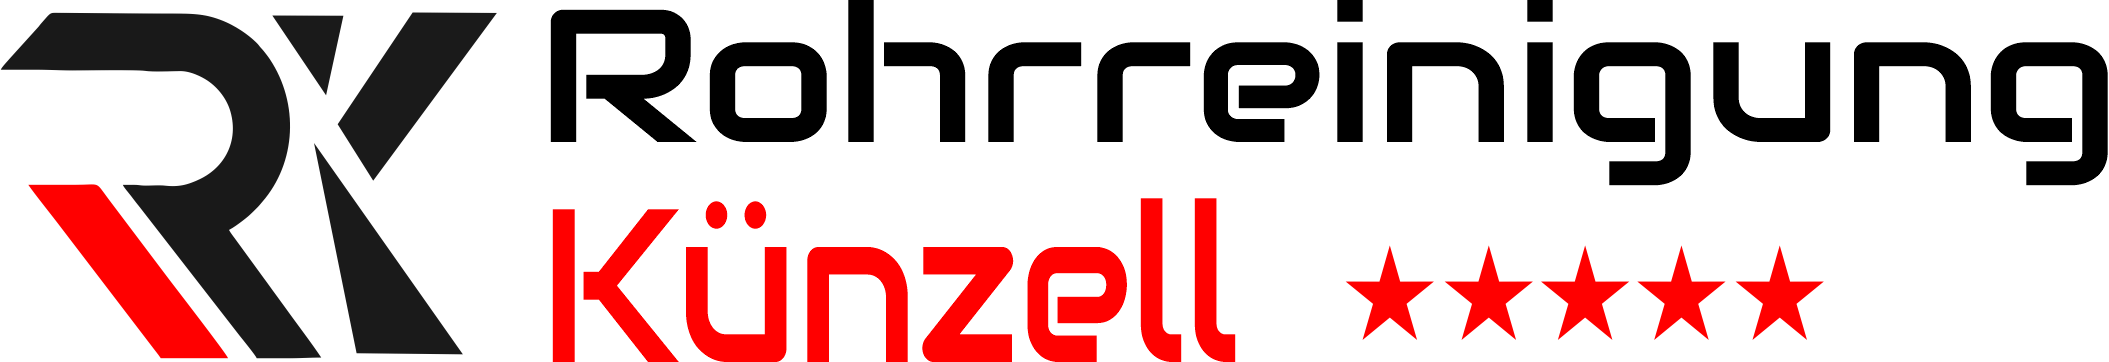 Rohrreinigung Künzell Logo